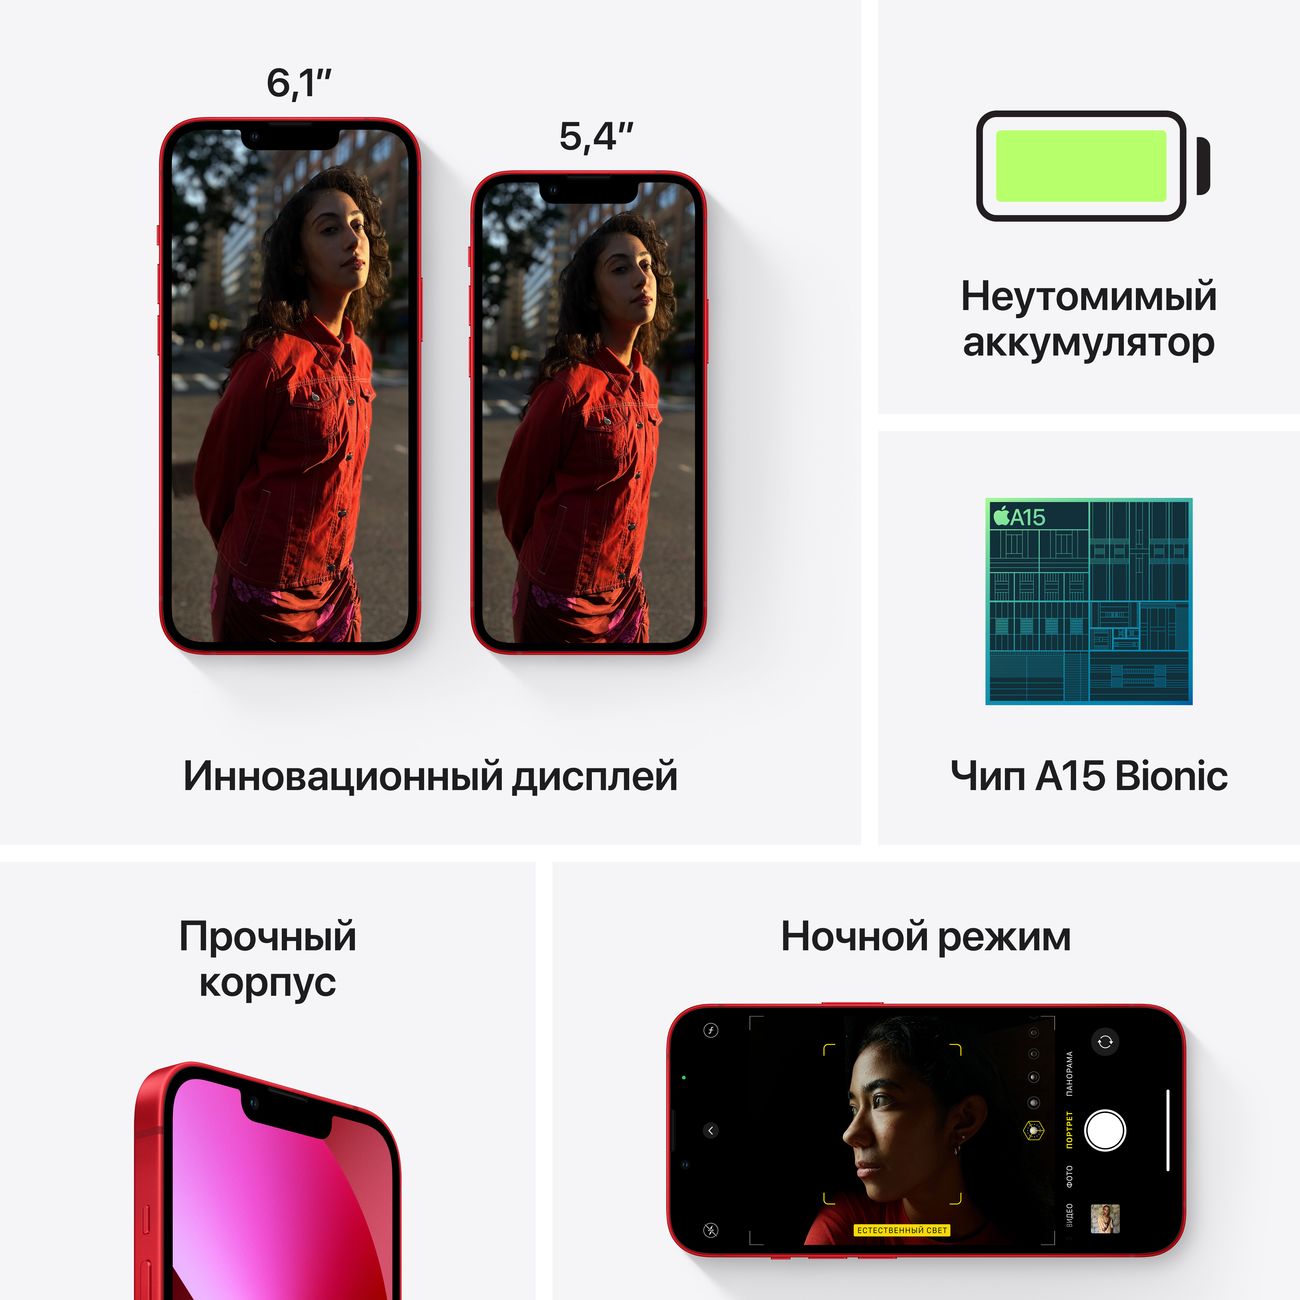 Купить смартфон apple iphone 13 128gb pink Apple iPhone 13 в официальном магазине Apple, Samsung, Xiaomi. iPixel.ru Купить, заказ, кредит, рассрочка, отзывы,  характеристики, цена,  фотографии, в подарок.